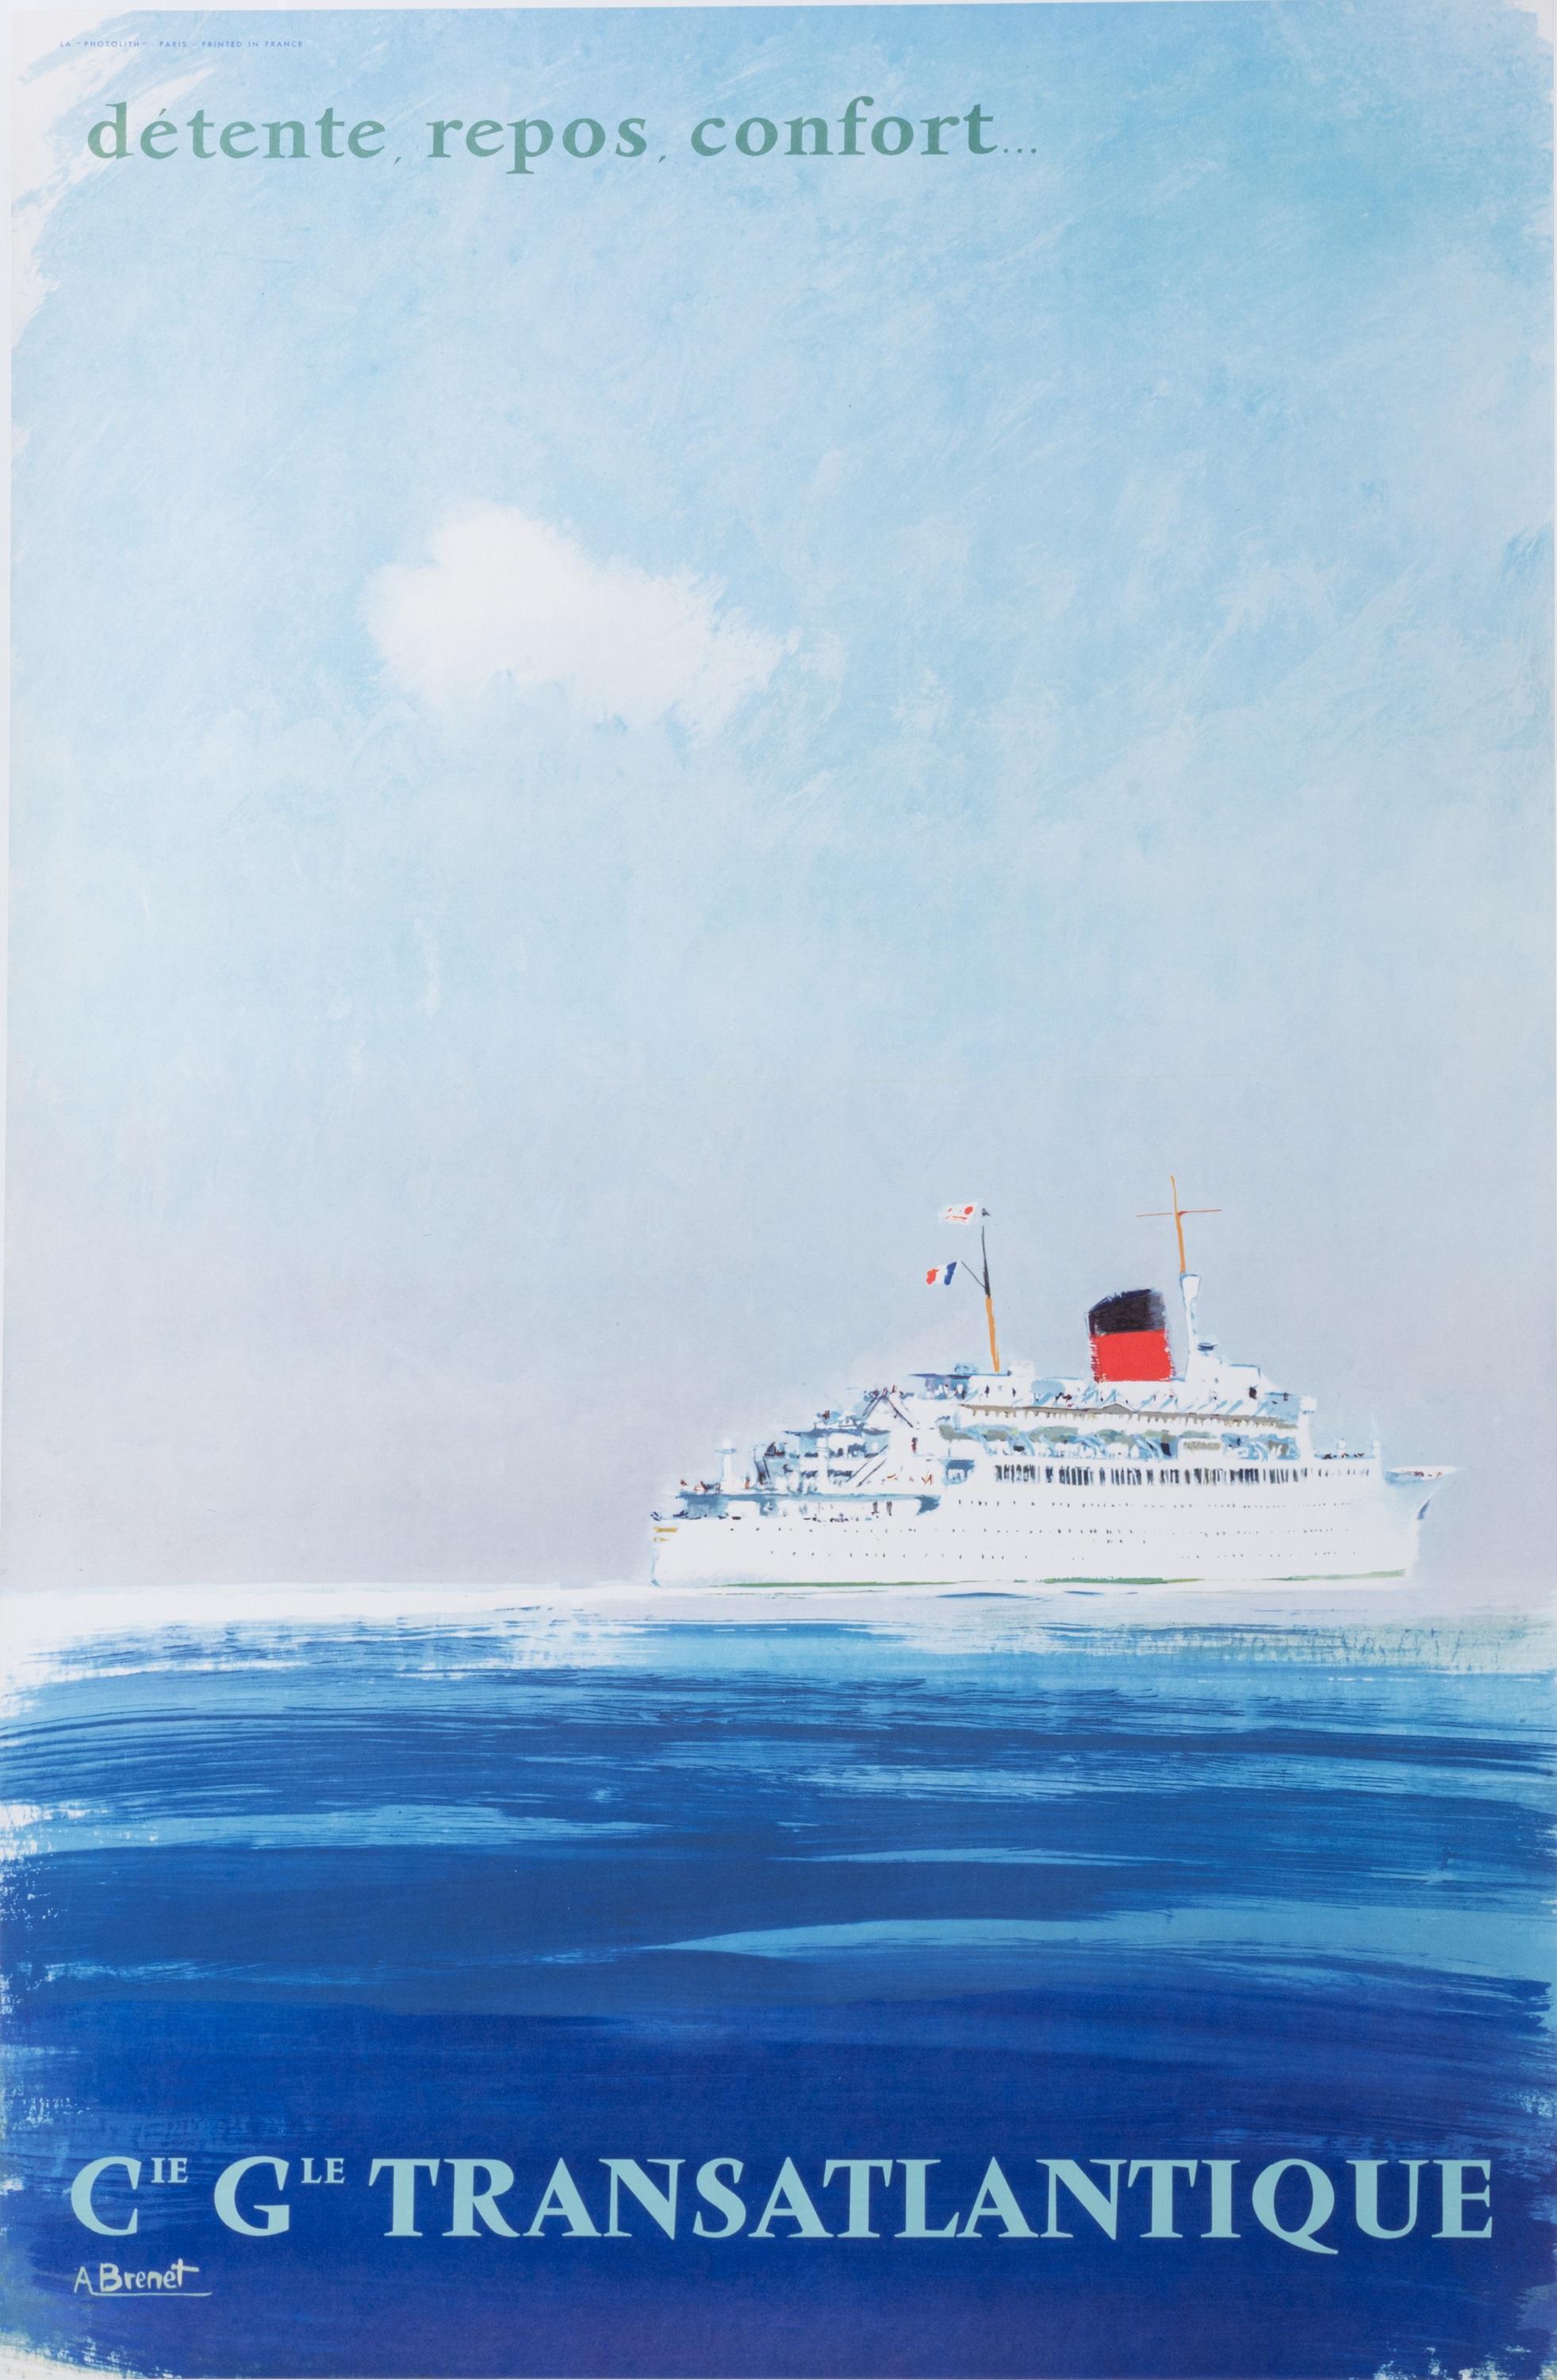 Cette affiche de Brenet réalisée vers 1950 a été produite pour promouvoir le tourisme par bateau via la Compagnie Générale Transatlantique. 

Artistics : Albert Brenet (1903 - 2005)
Titre : Compagnie Générale Transatlantique - Repos - Détente -